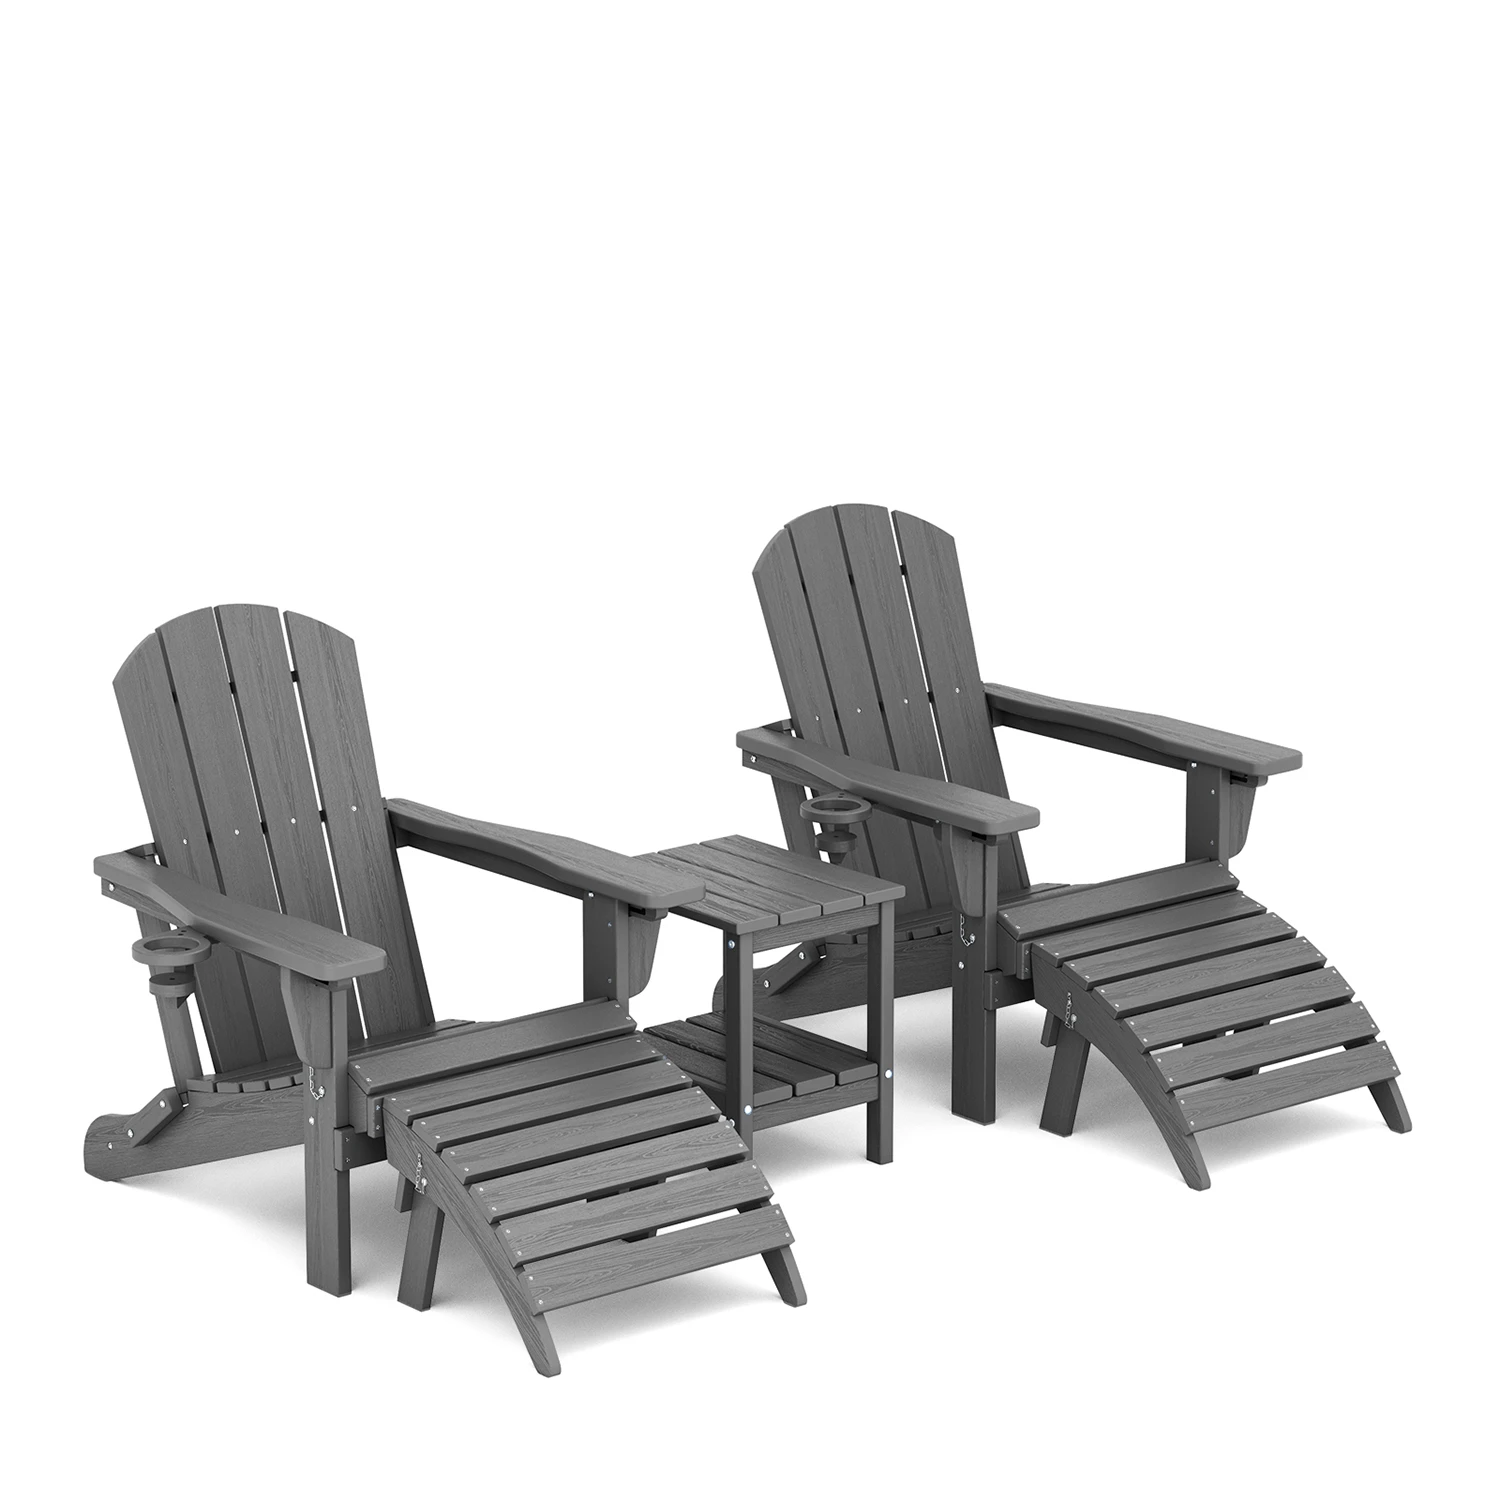 5-Piece Reclining Adirondack Chair Set in Dark Gray